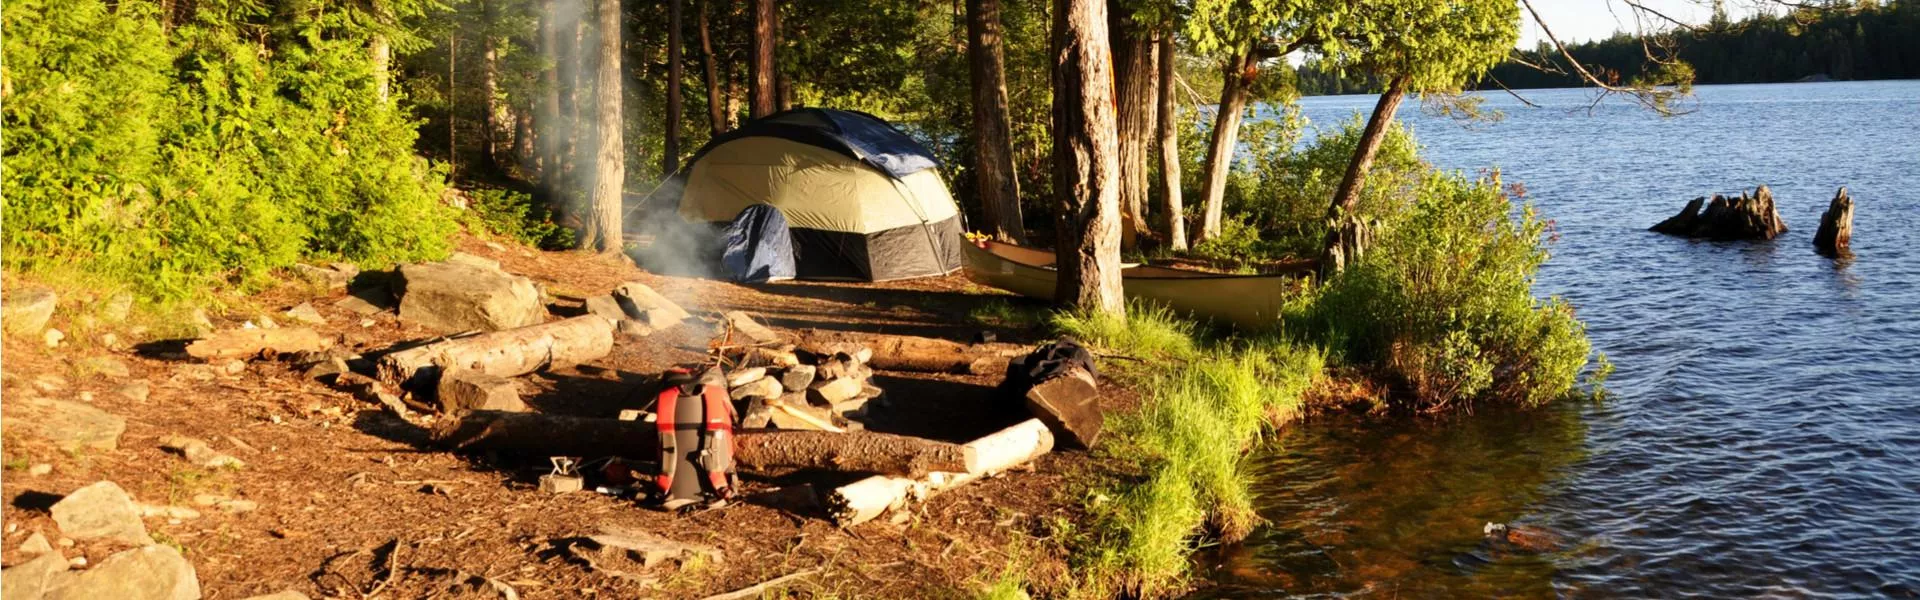 Duurzame campings: voor mensen die van de natuur houden